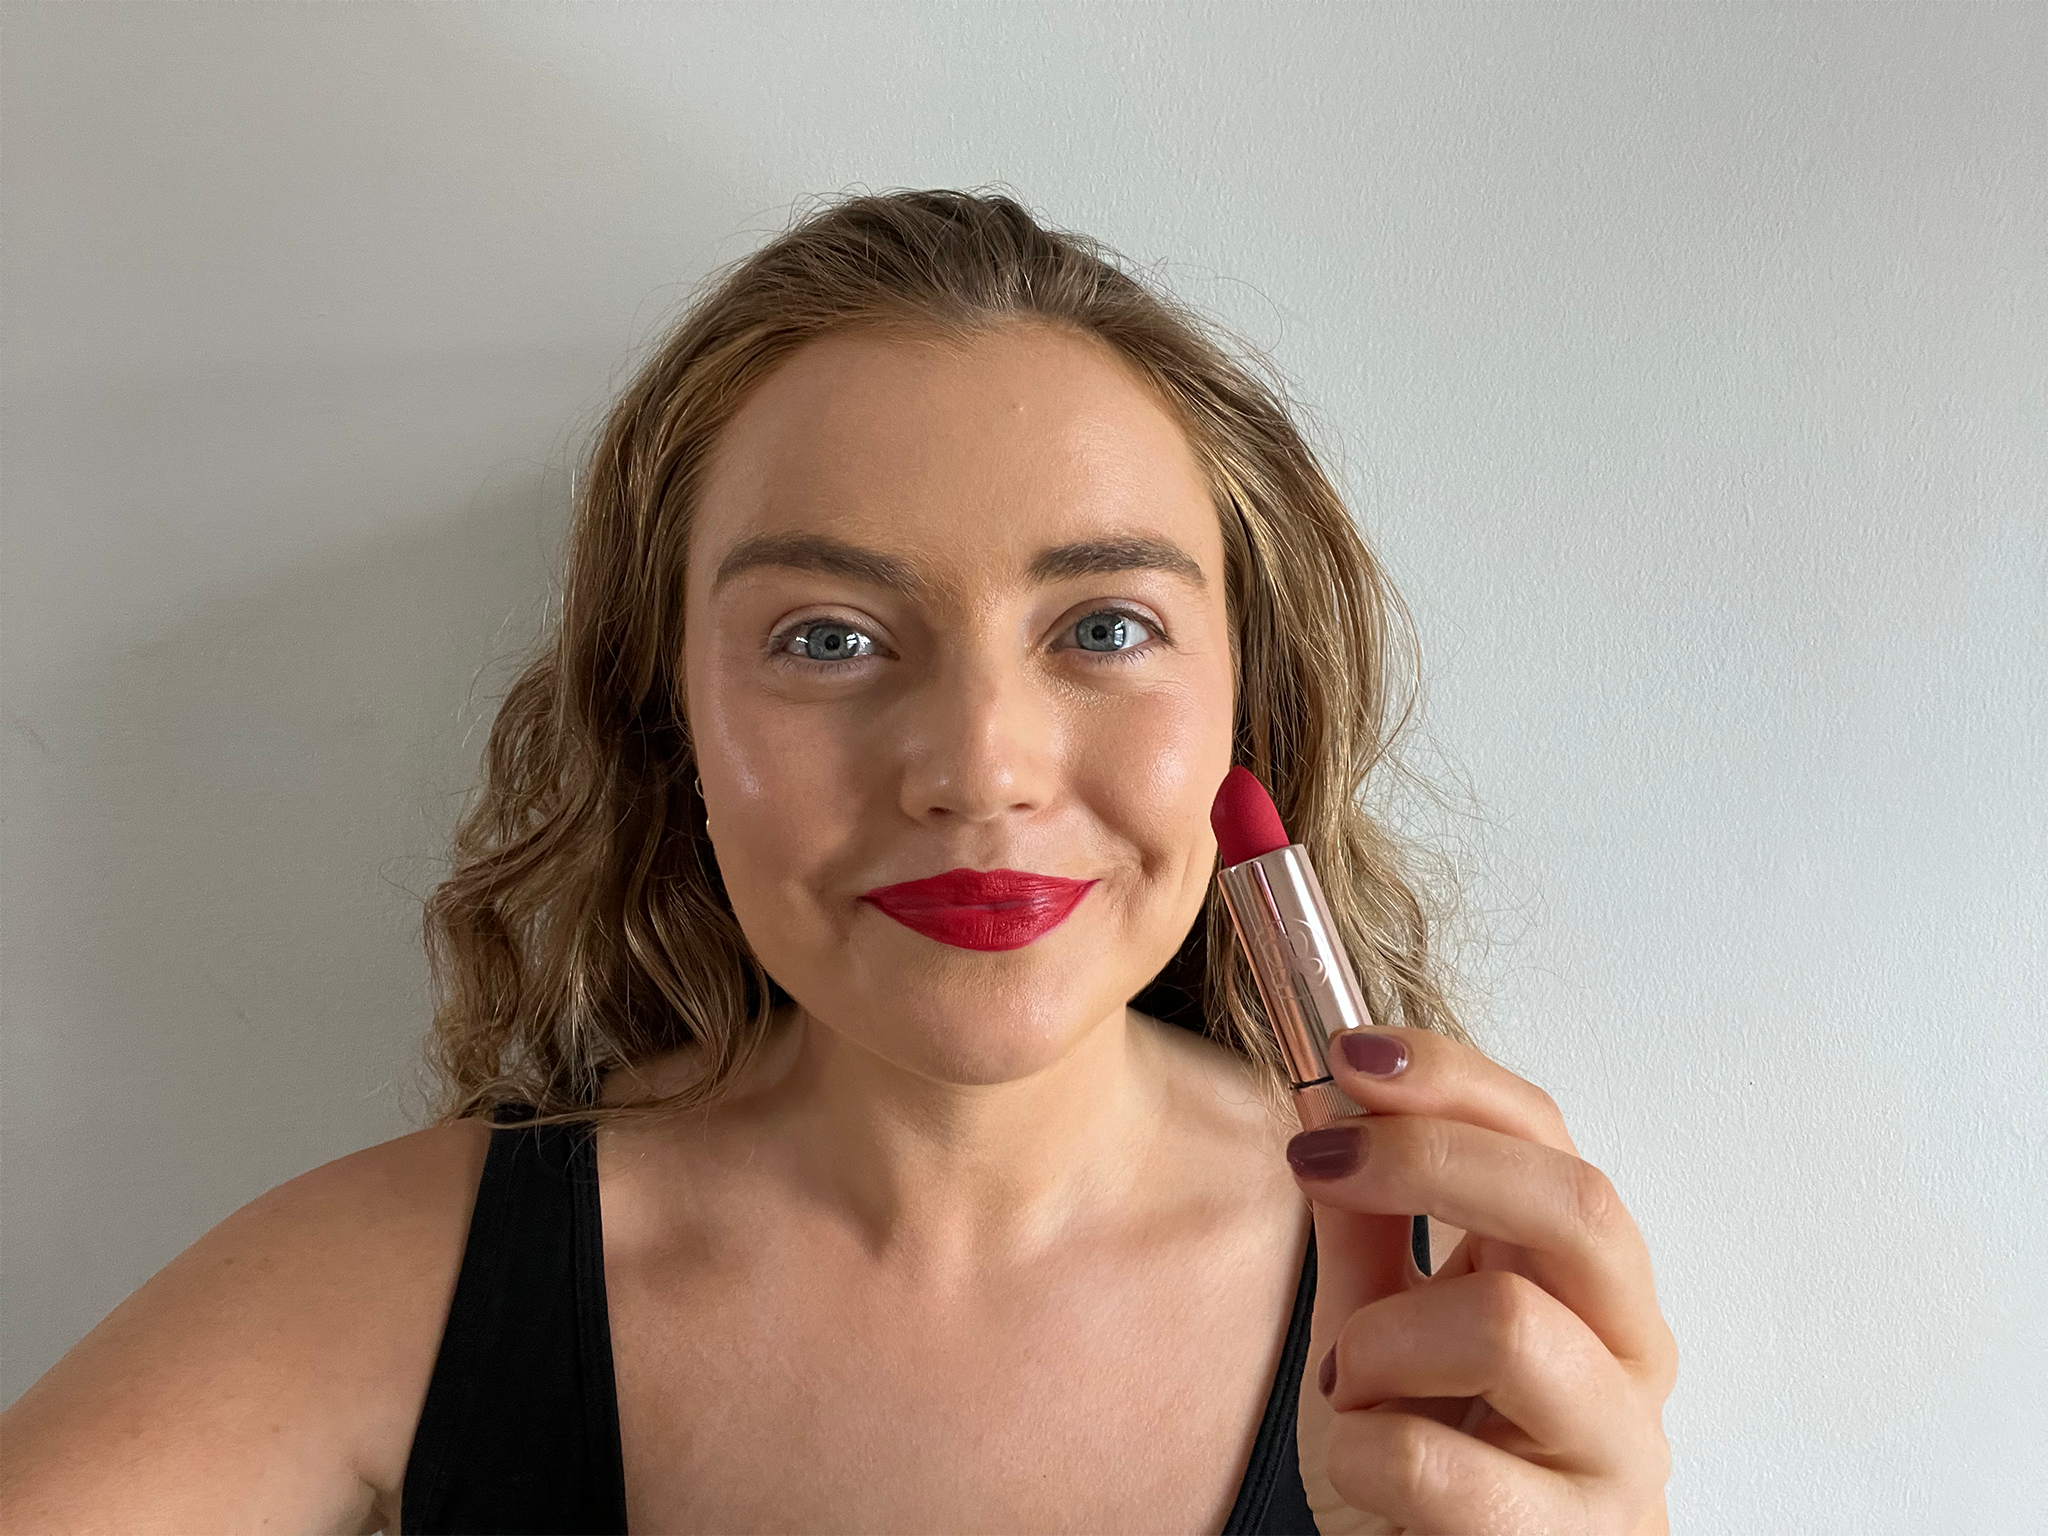 Anastasia Beverly Hills matte lipstick